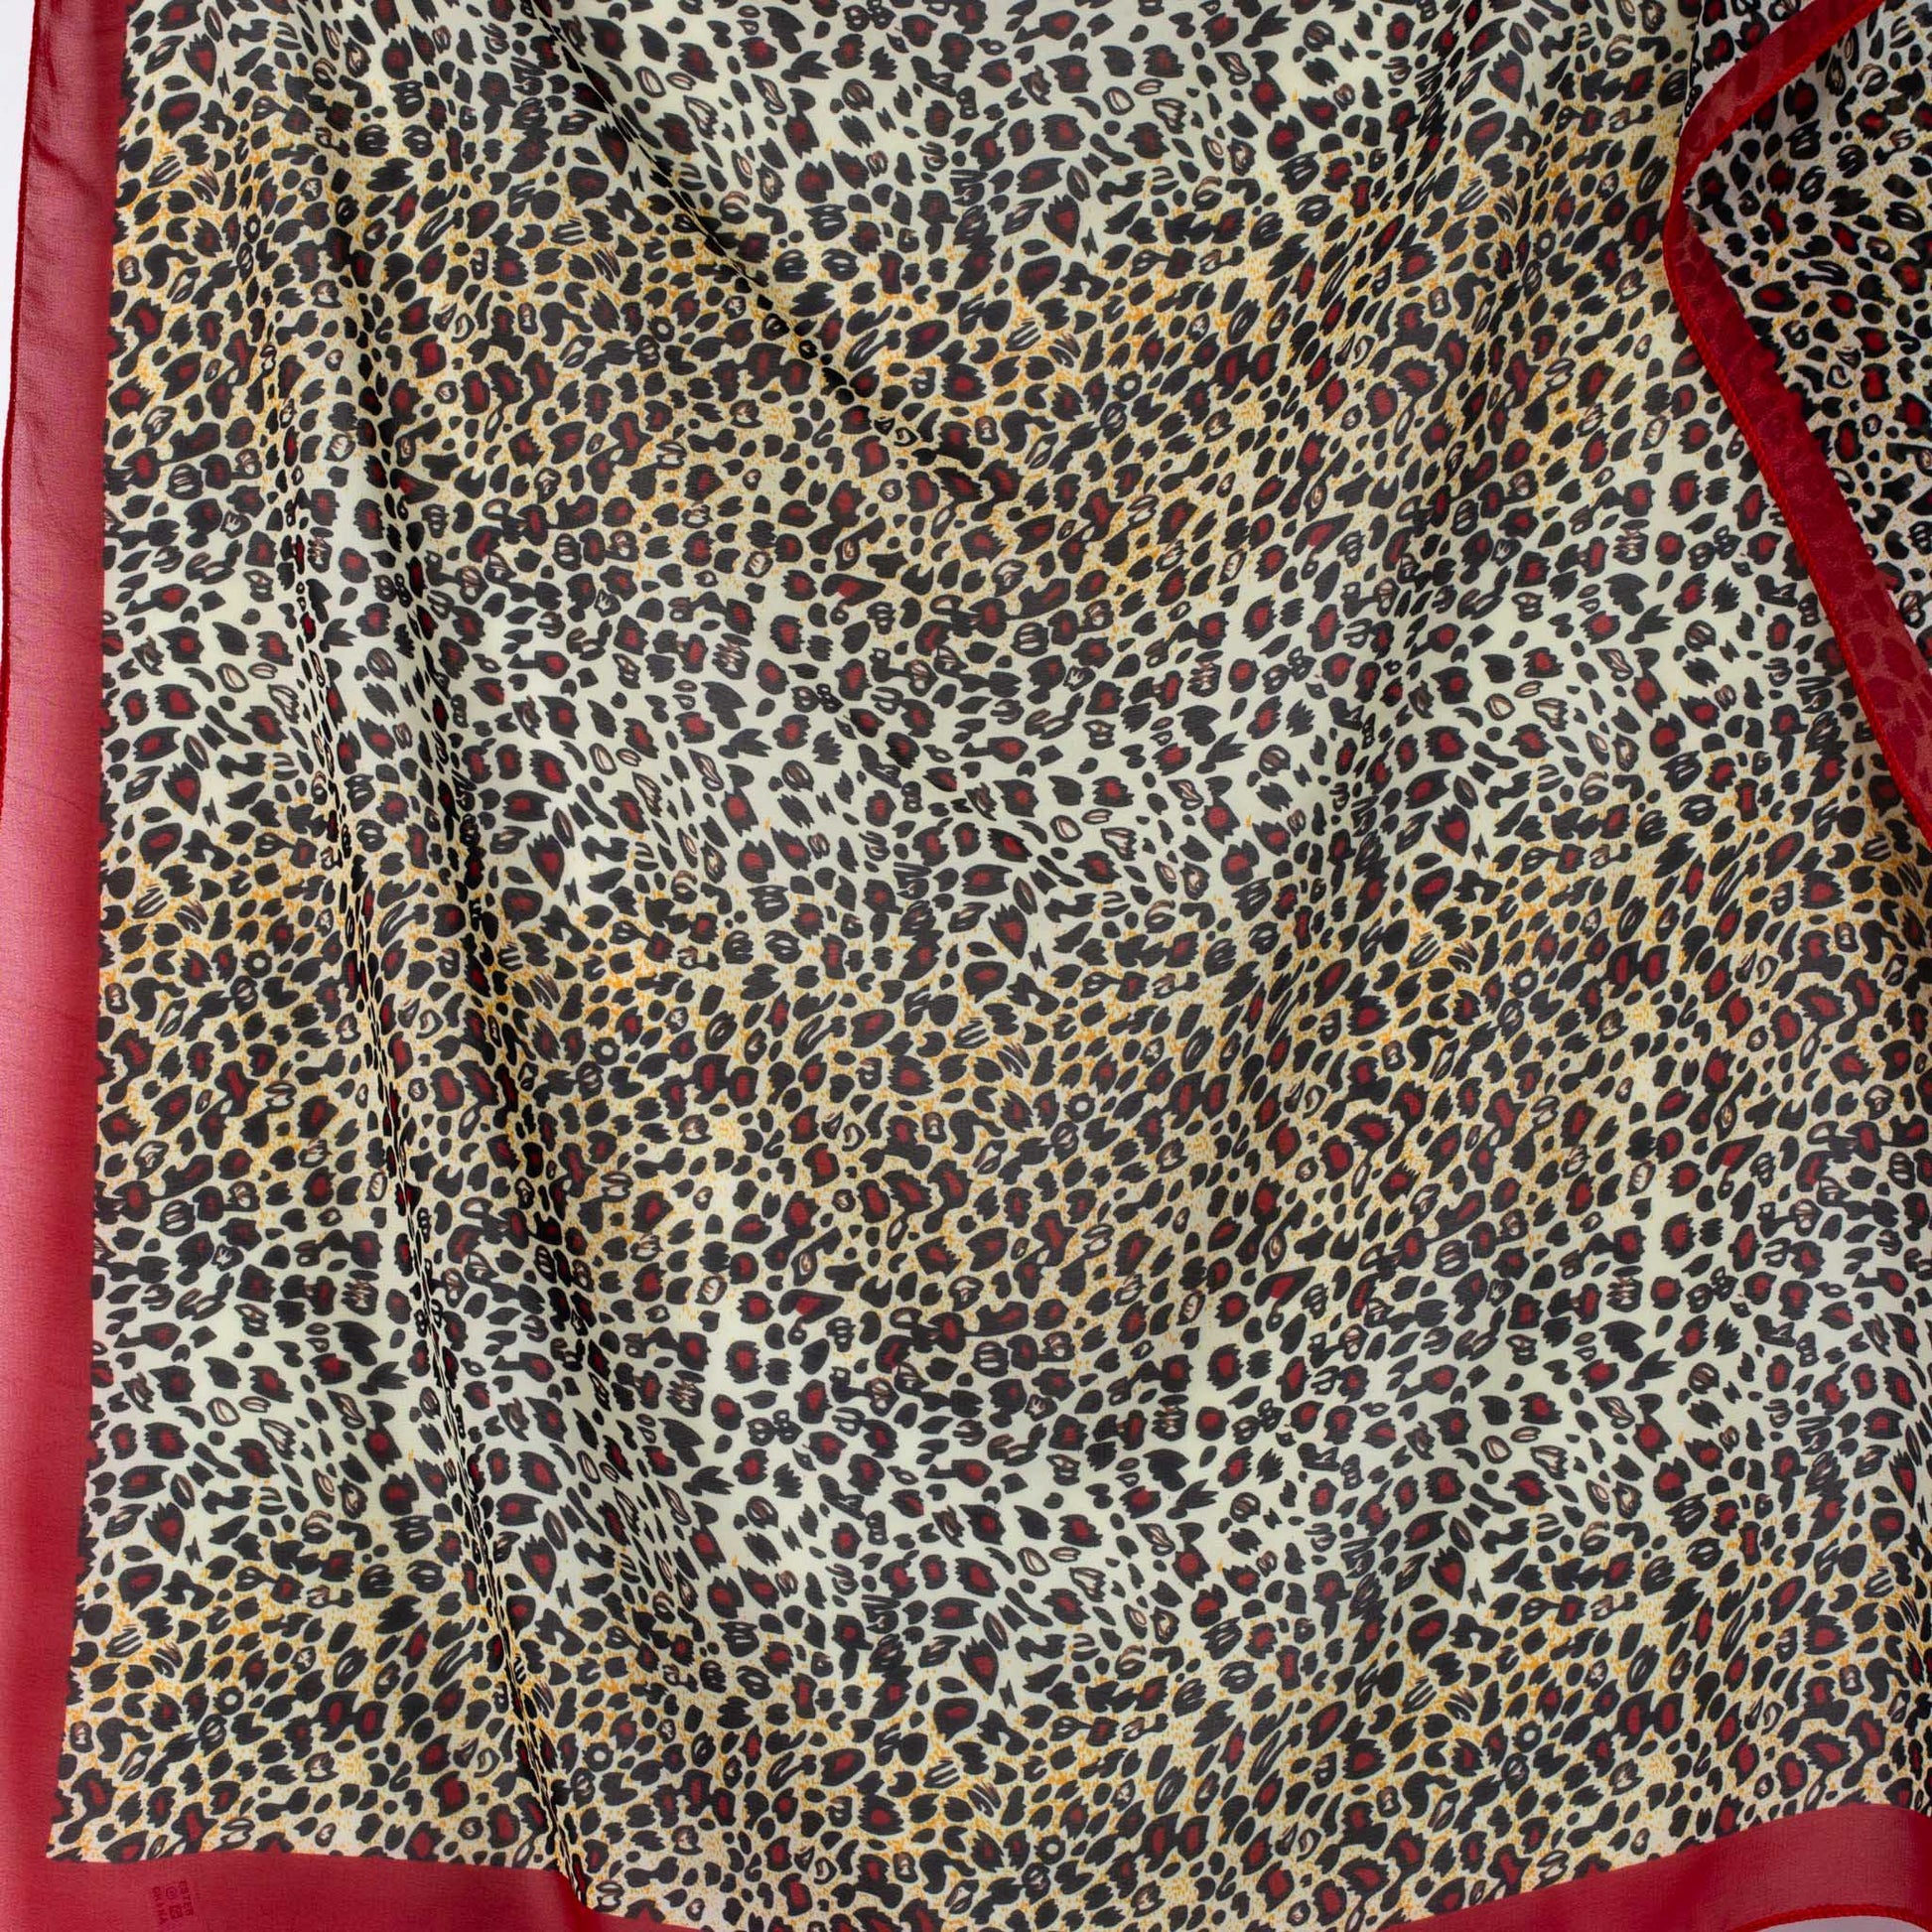 Eșarfă damă din mătase cu animal print , forme mici, 70 x 65 cm - Roșu, Bej, Maro